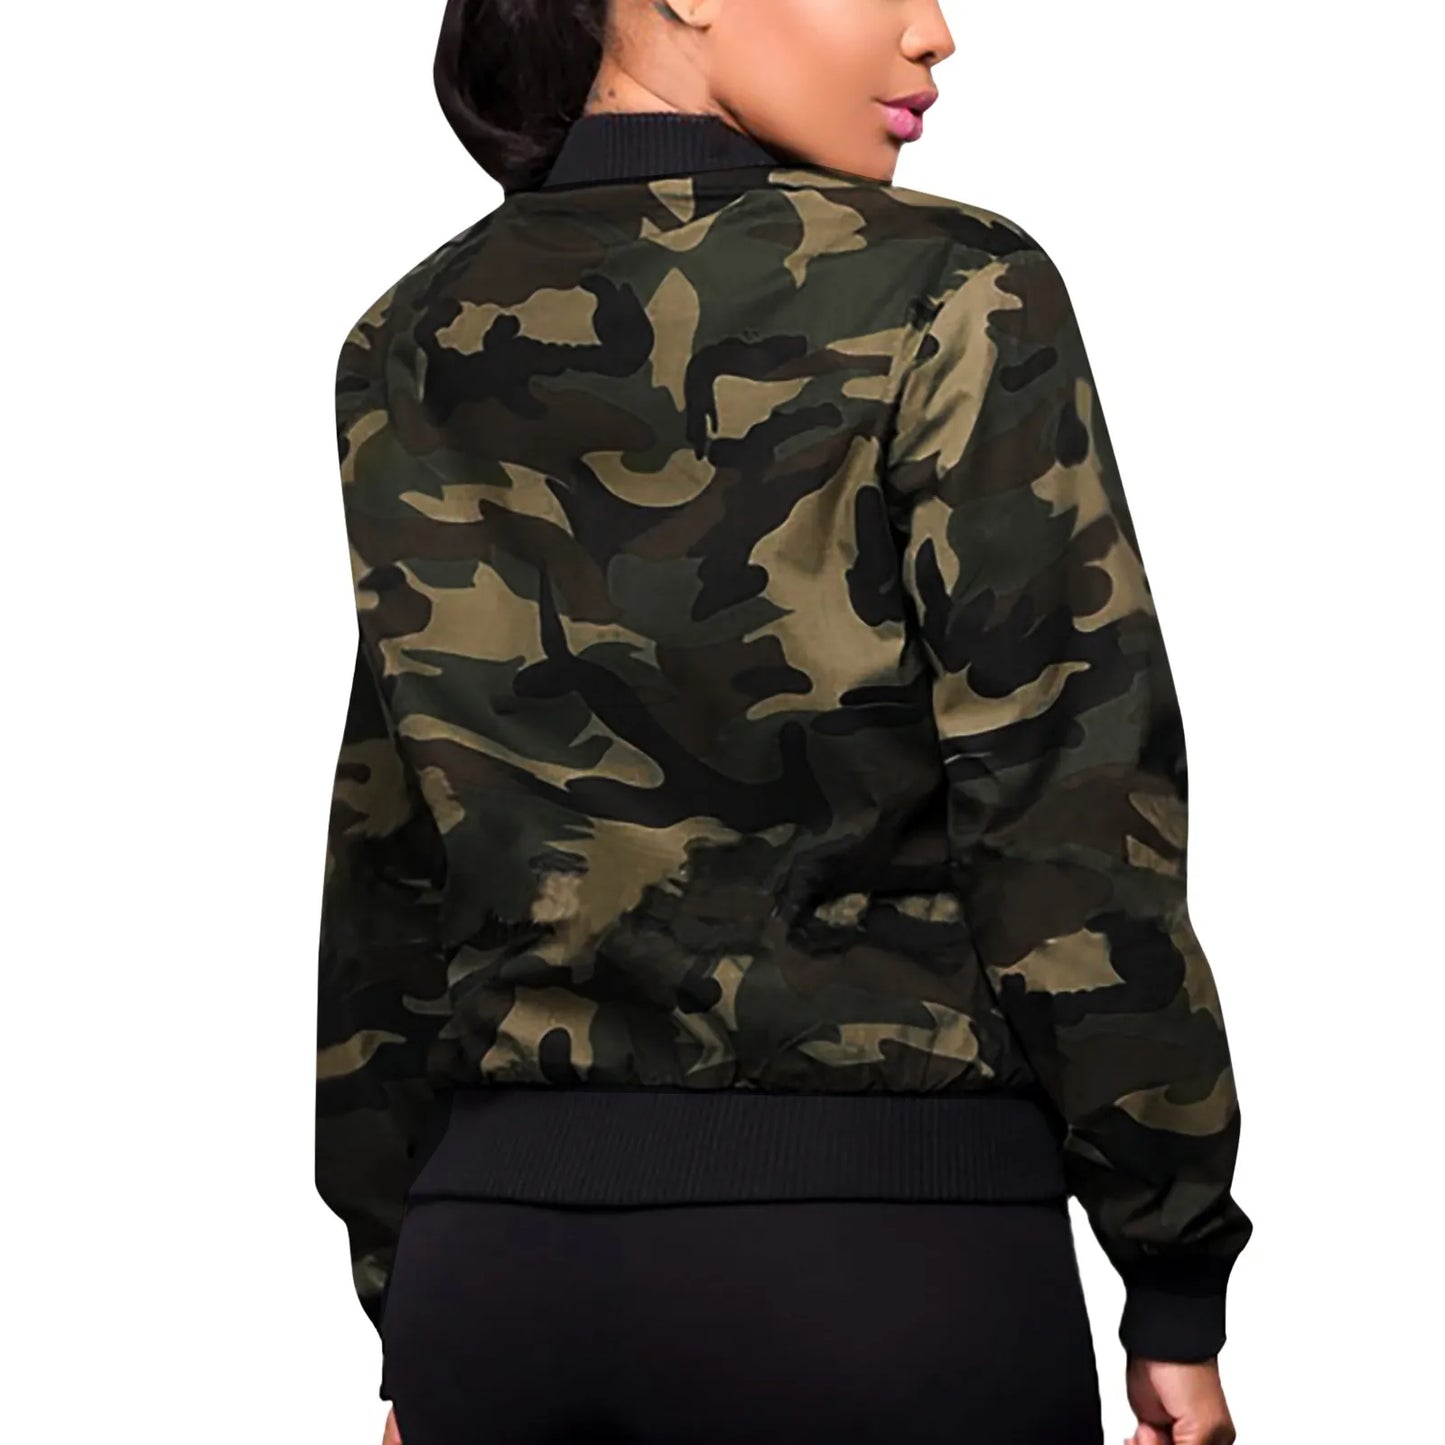 Harajuku Zipper Bomber Jacket Women Street Style/Camouflage Baseball Jackets Ladies Coat With Pockets